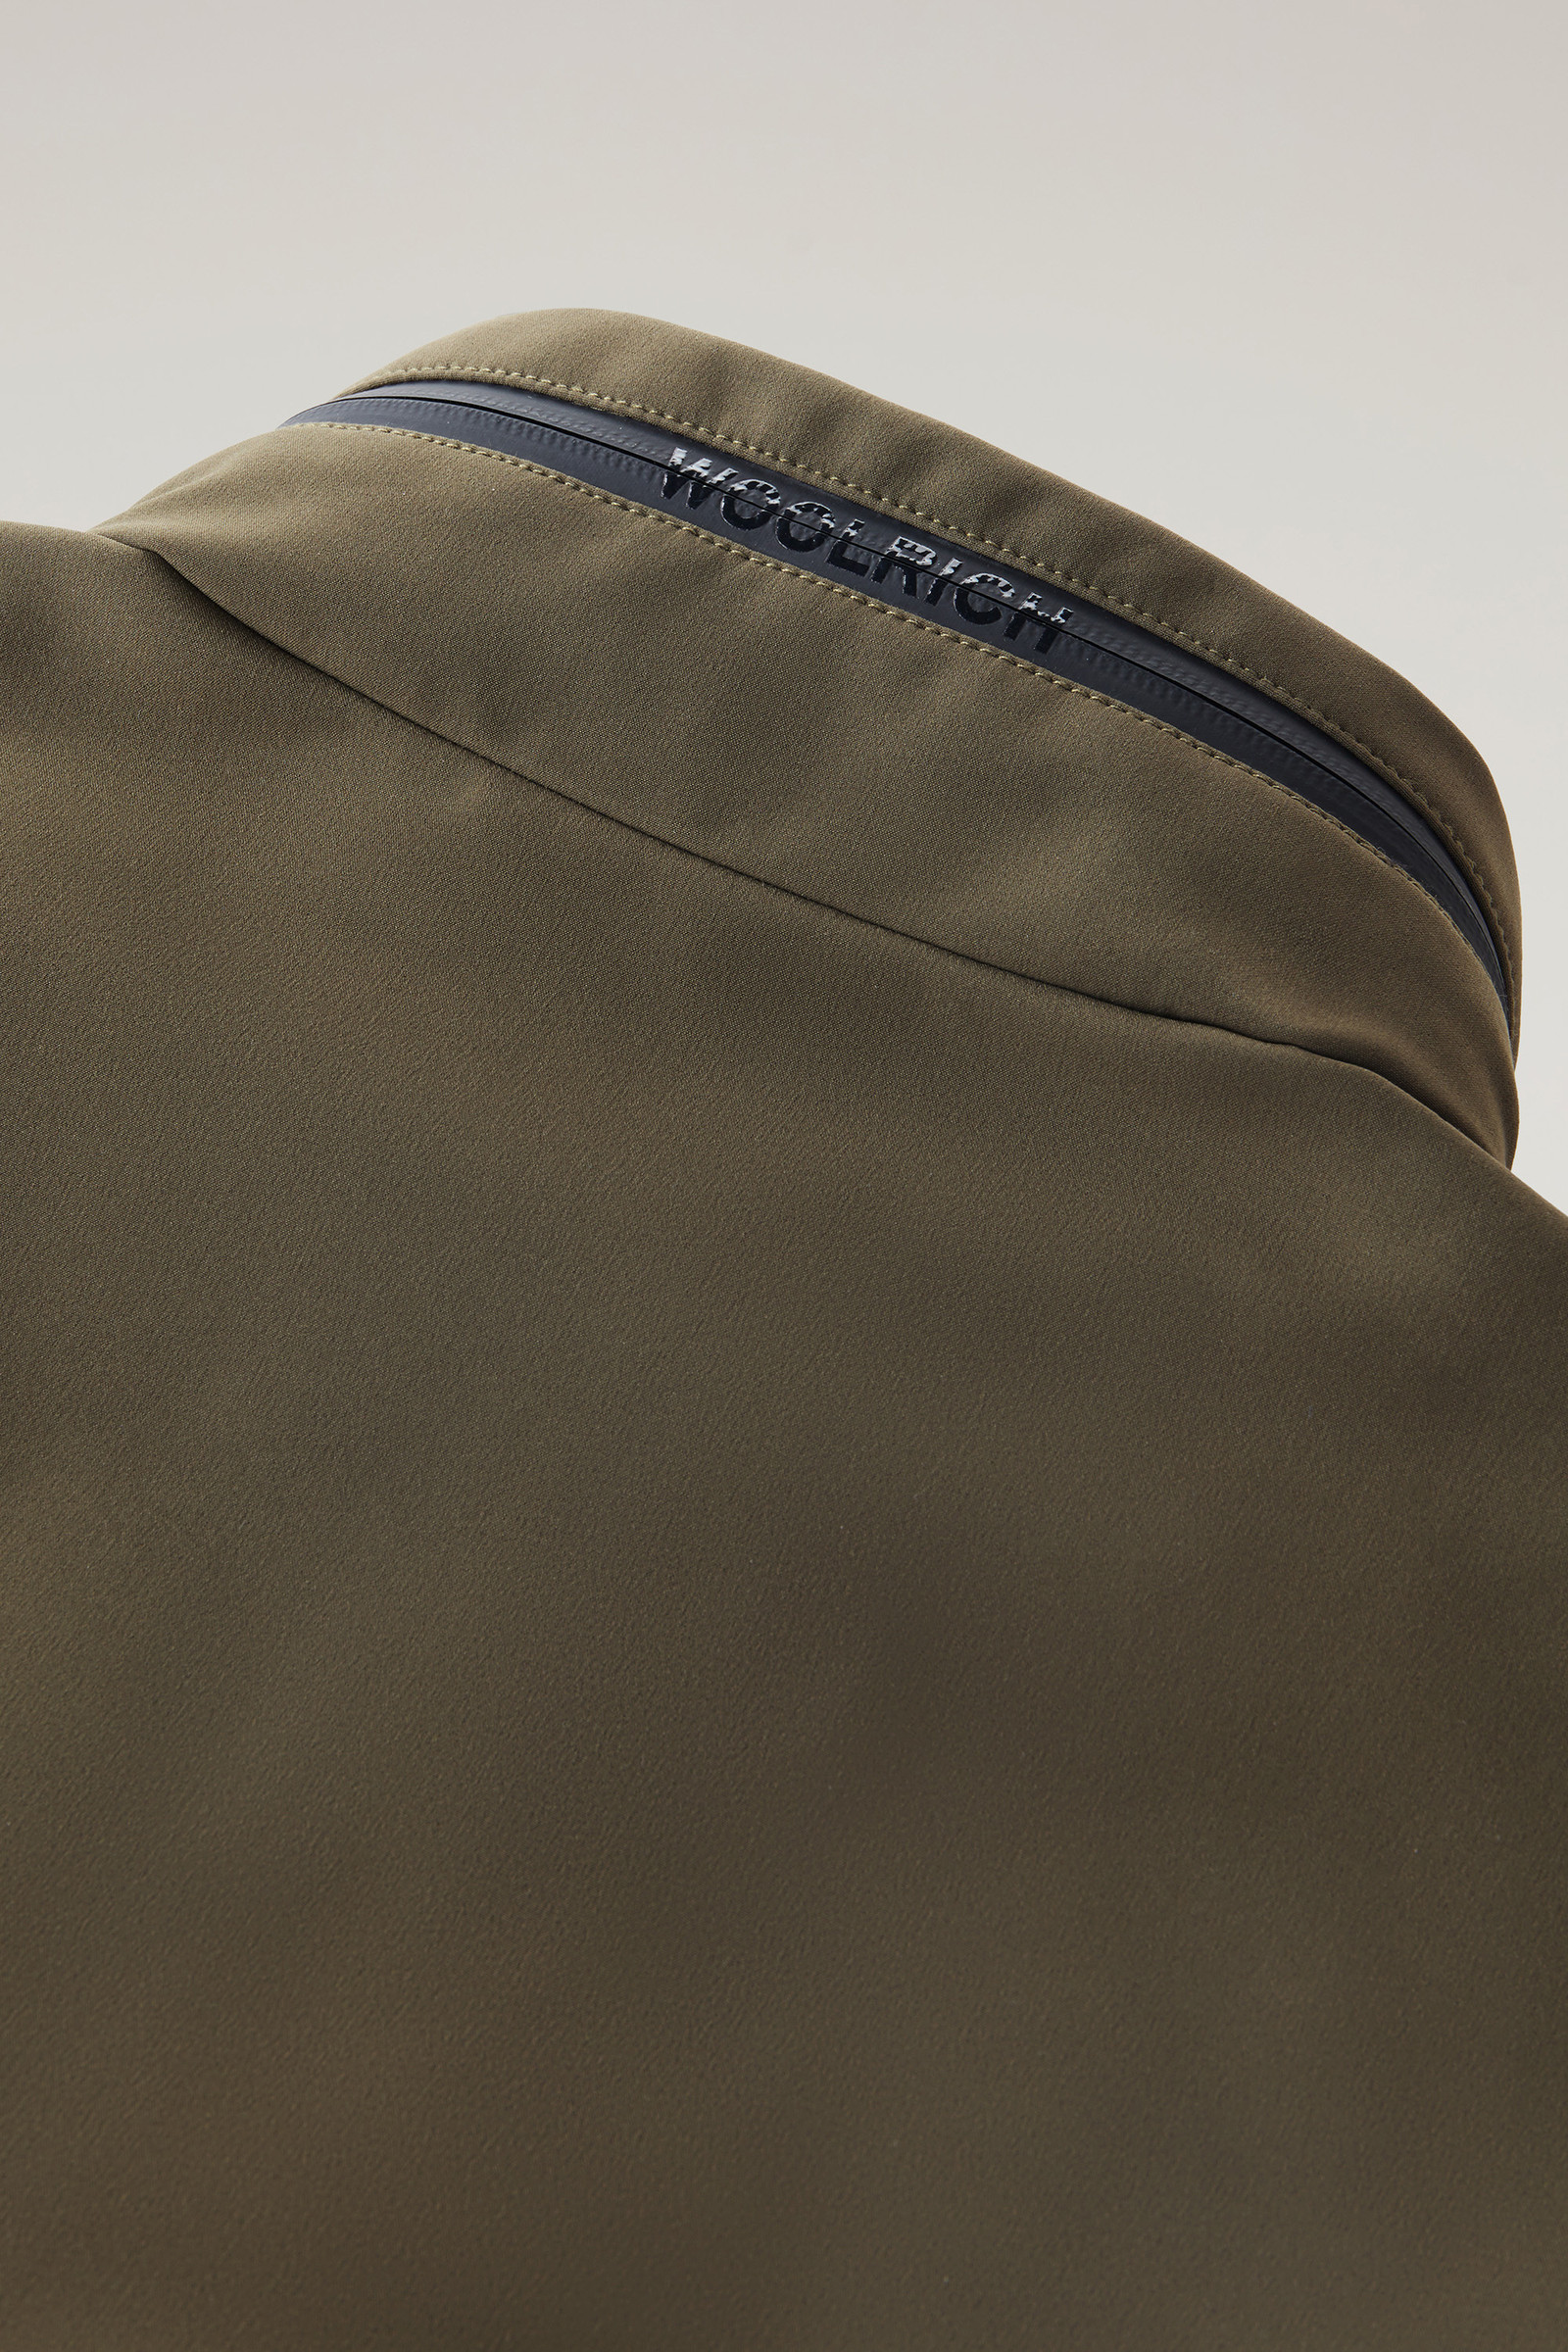 Field Jacket in Tech Softshell Green | Woolrich USA